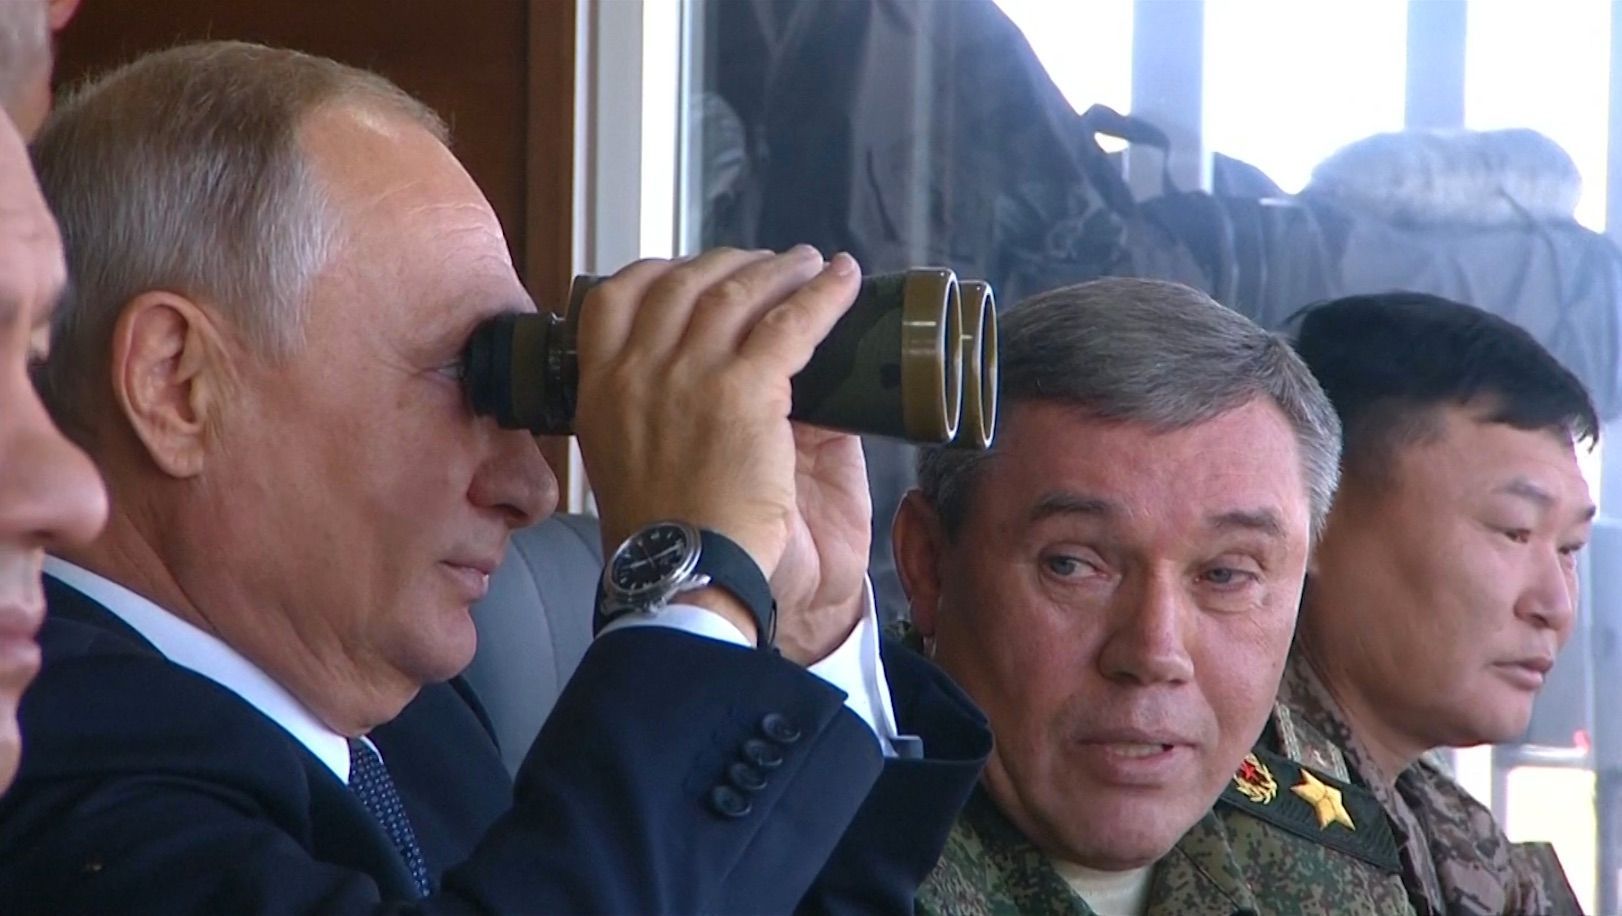 Prezident Putin dorazil na obří vojenské cvičení. Pozoroval armádu v akci